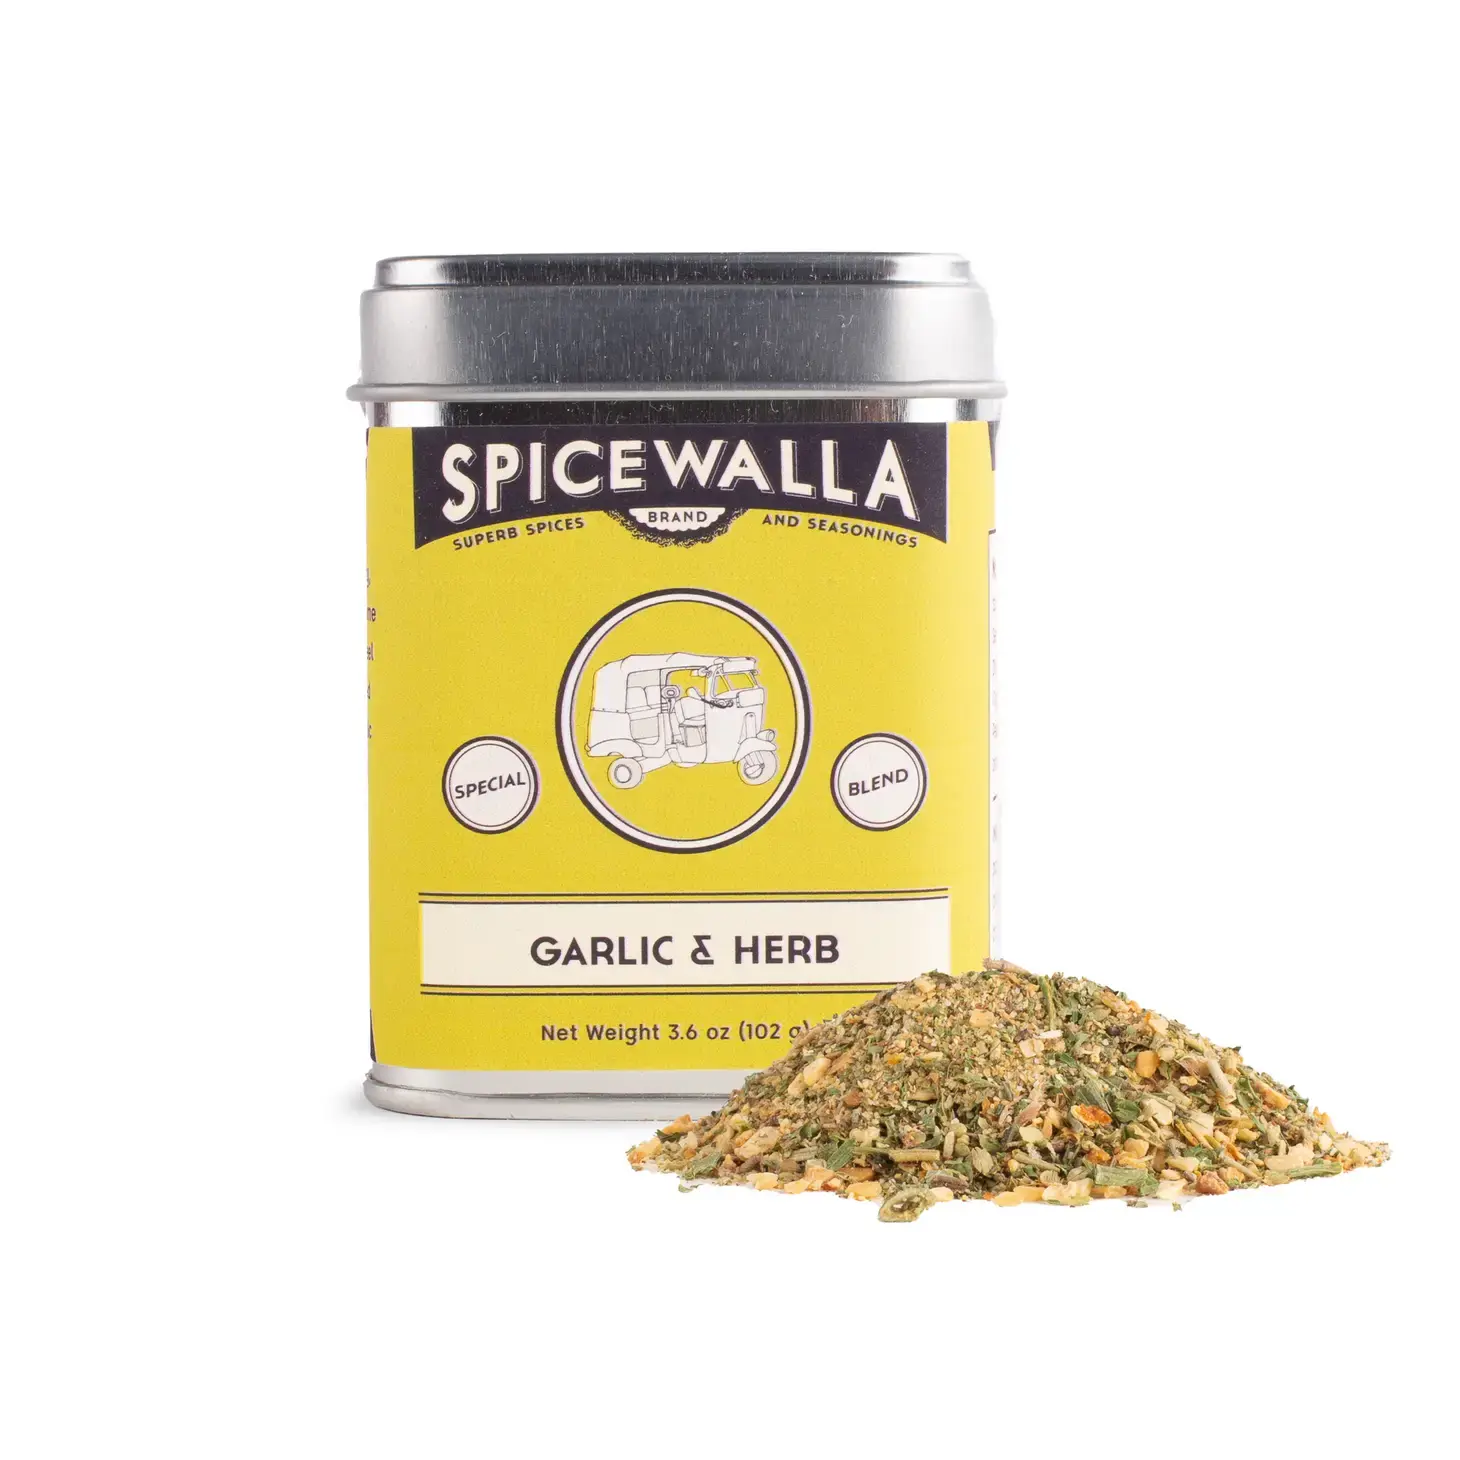 https://cdn.shoplightspeed.com/shops/626275/files/56547566/spicewalla-seasonings-garlic-herb.jpg